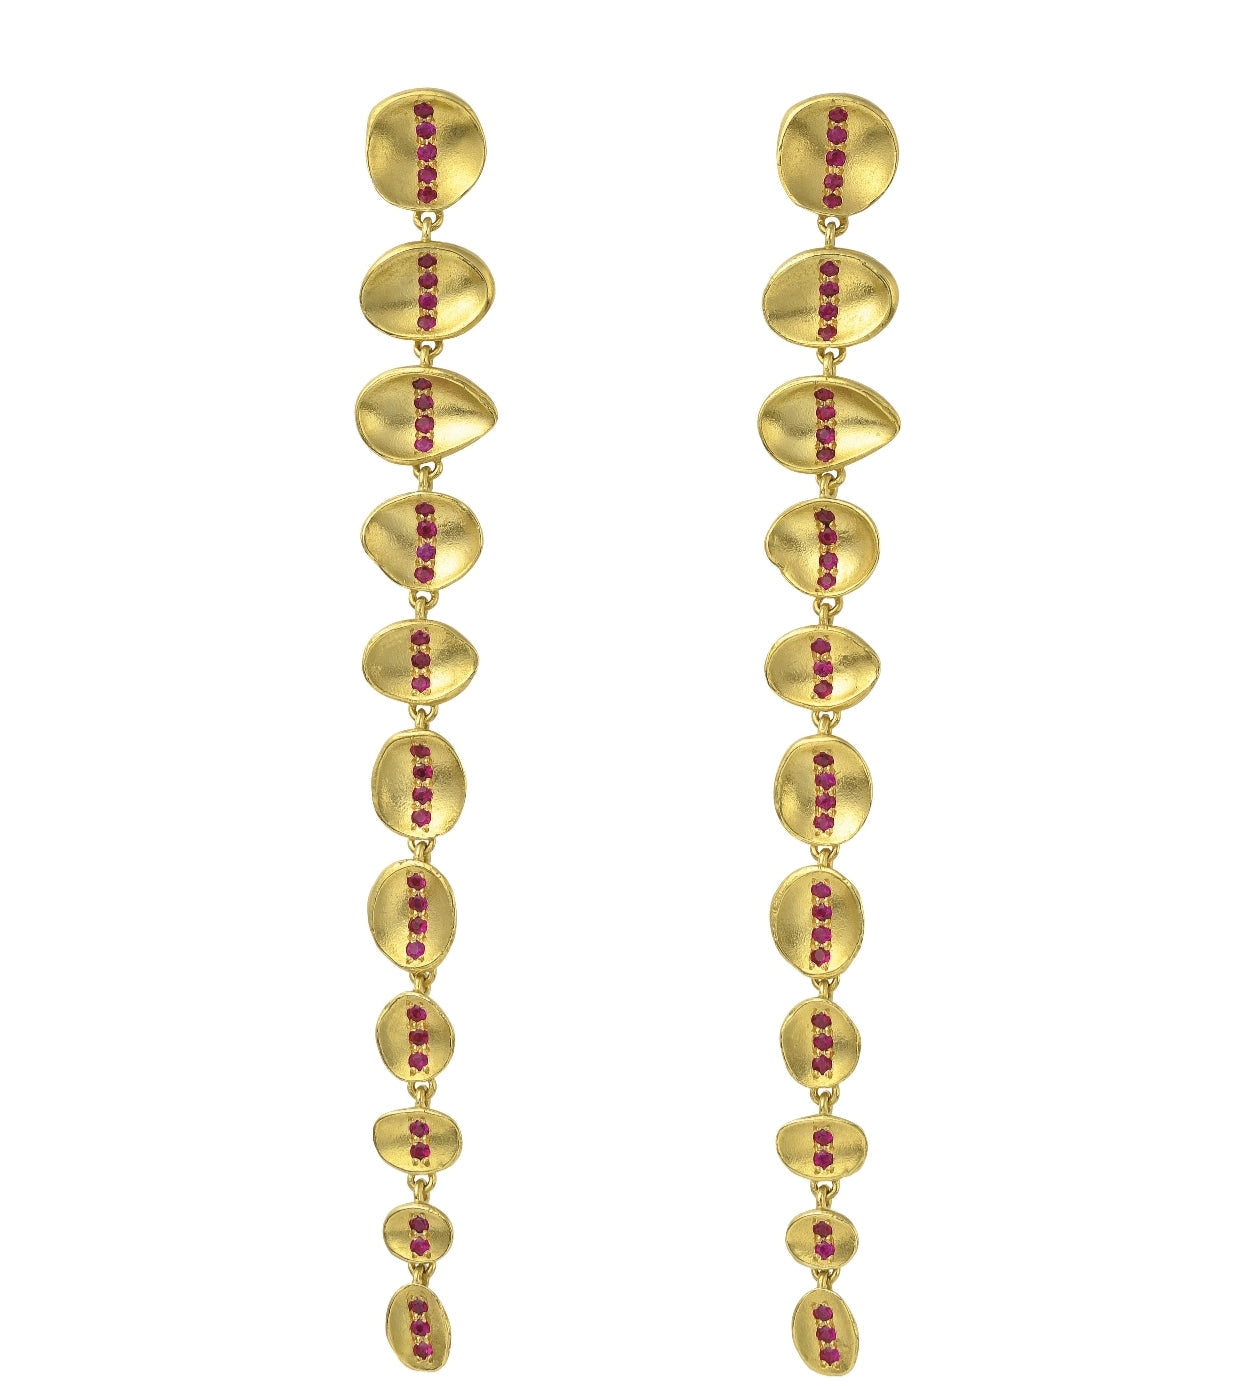 Gemfields Mneme Ruby earrings.18ct yellow gold.